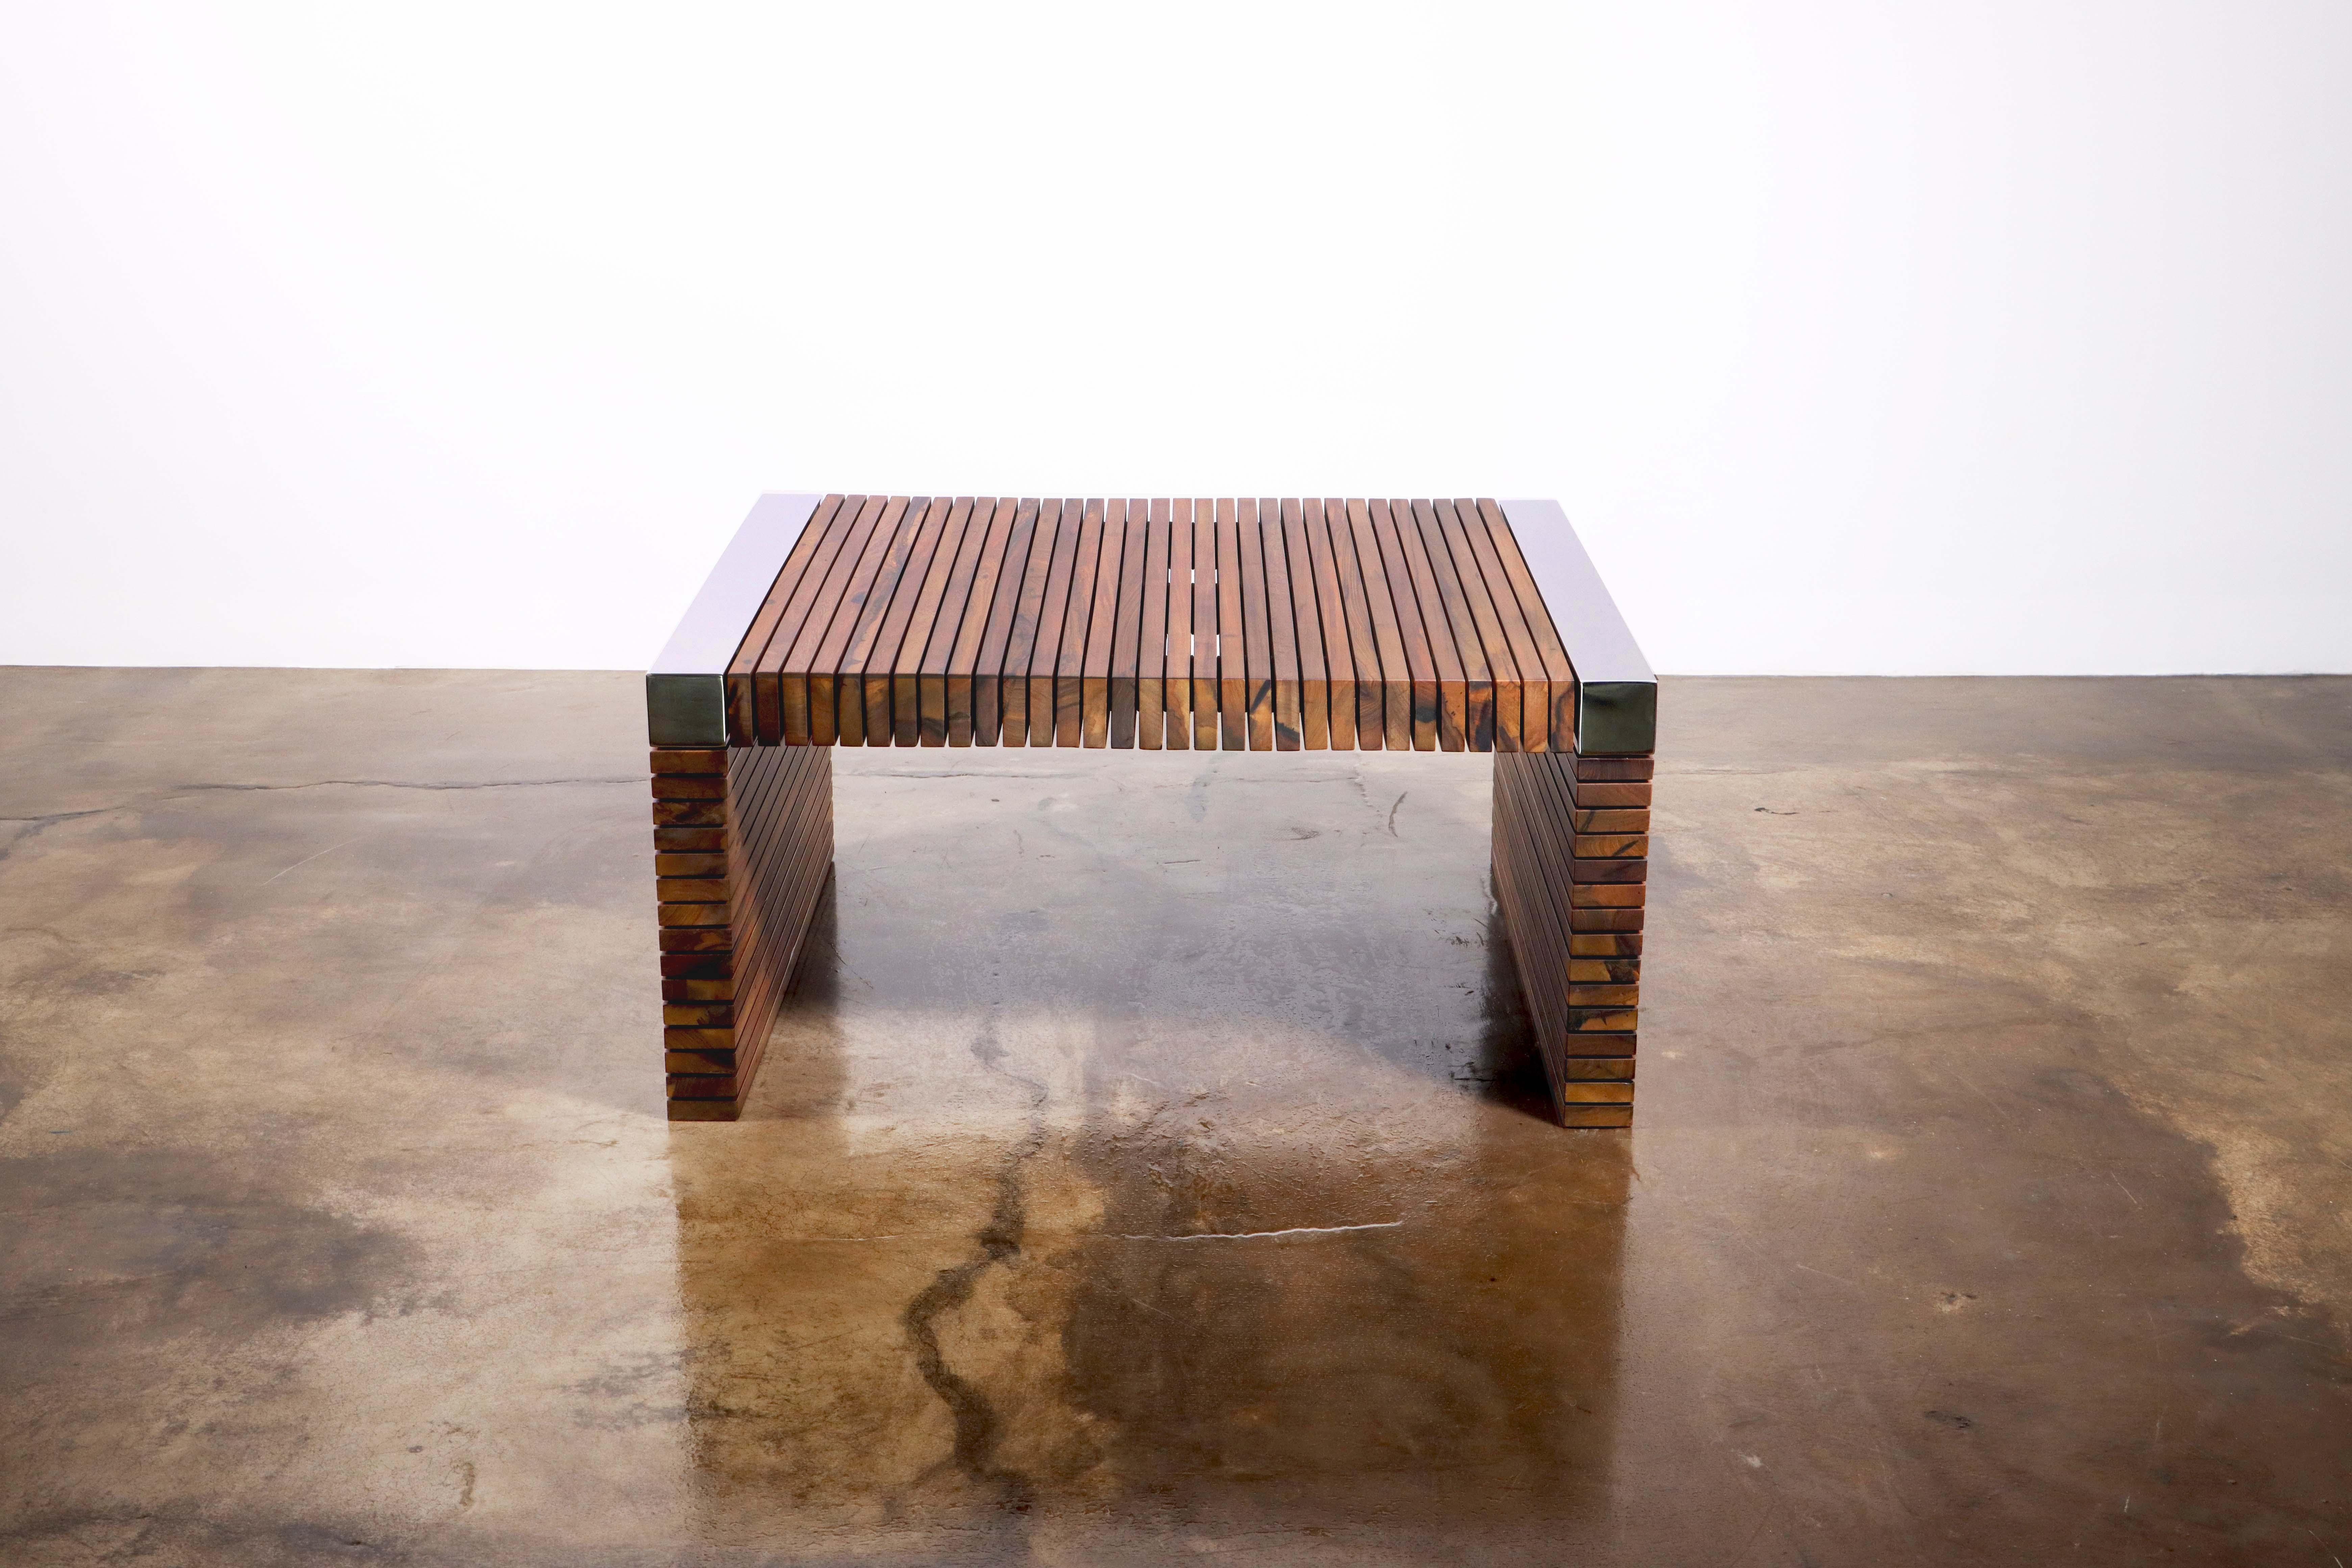 La table Argilla est une étude des contrastes, composée de lattes de bois répétées, suspendues dans l'air par un squelette métallique et des disques qui empêchent les lattes de se toucher. Ses angles sont ornés de barres de métal nickelé poli miroir